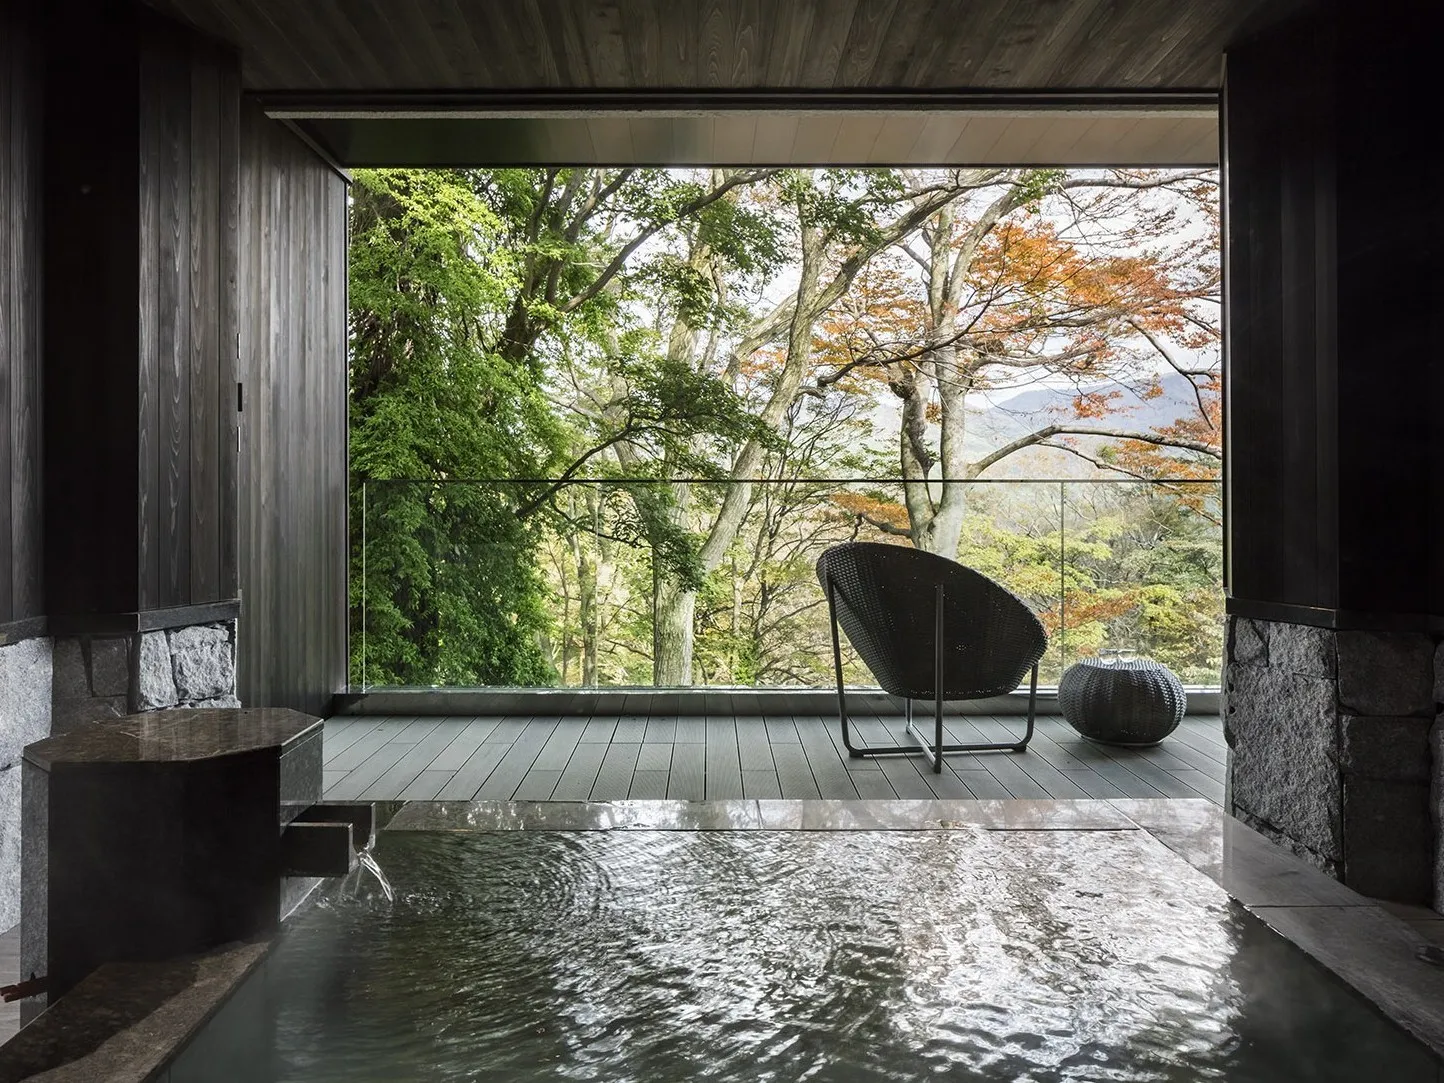 箱根の露天風呂付き客室で、静寂に浸るひとときを。